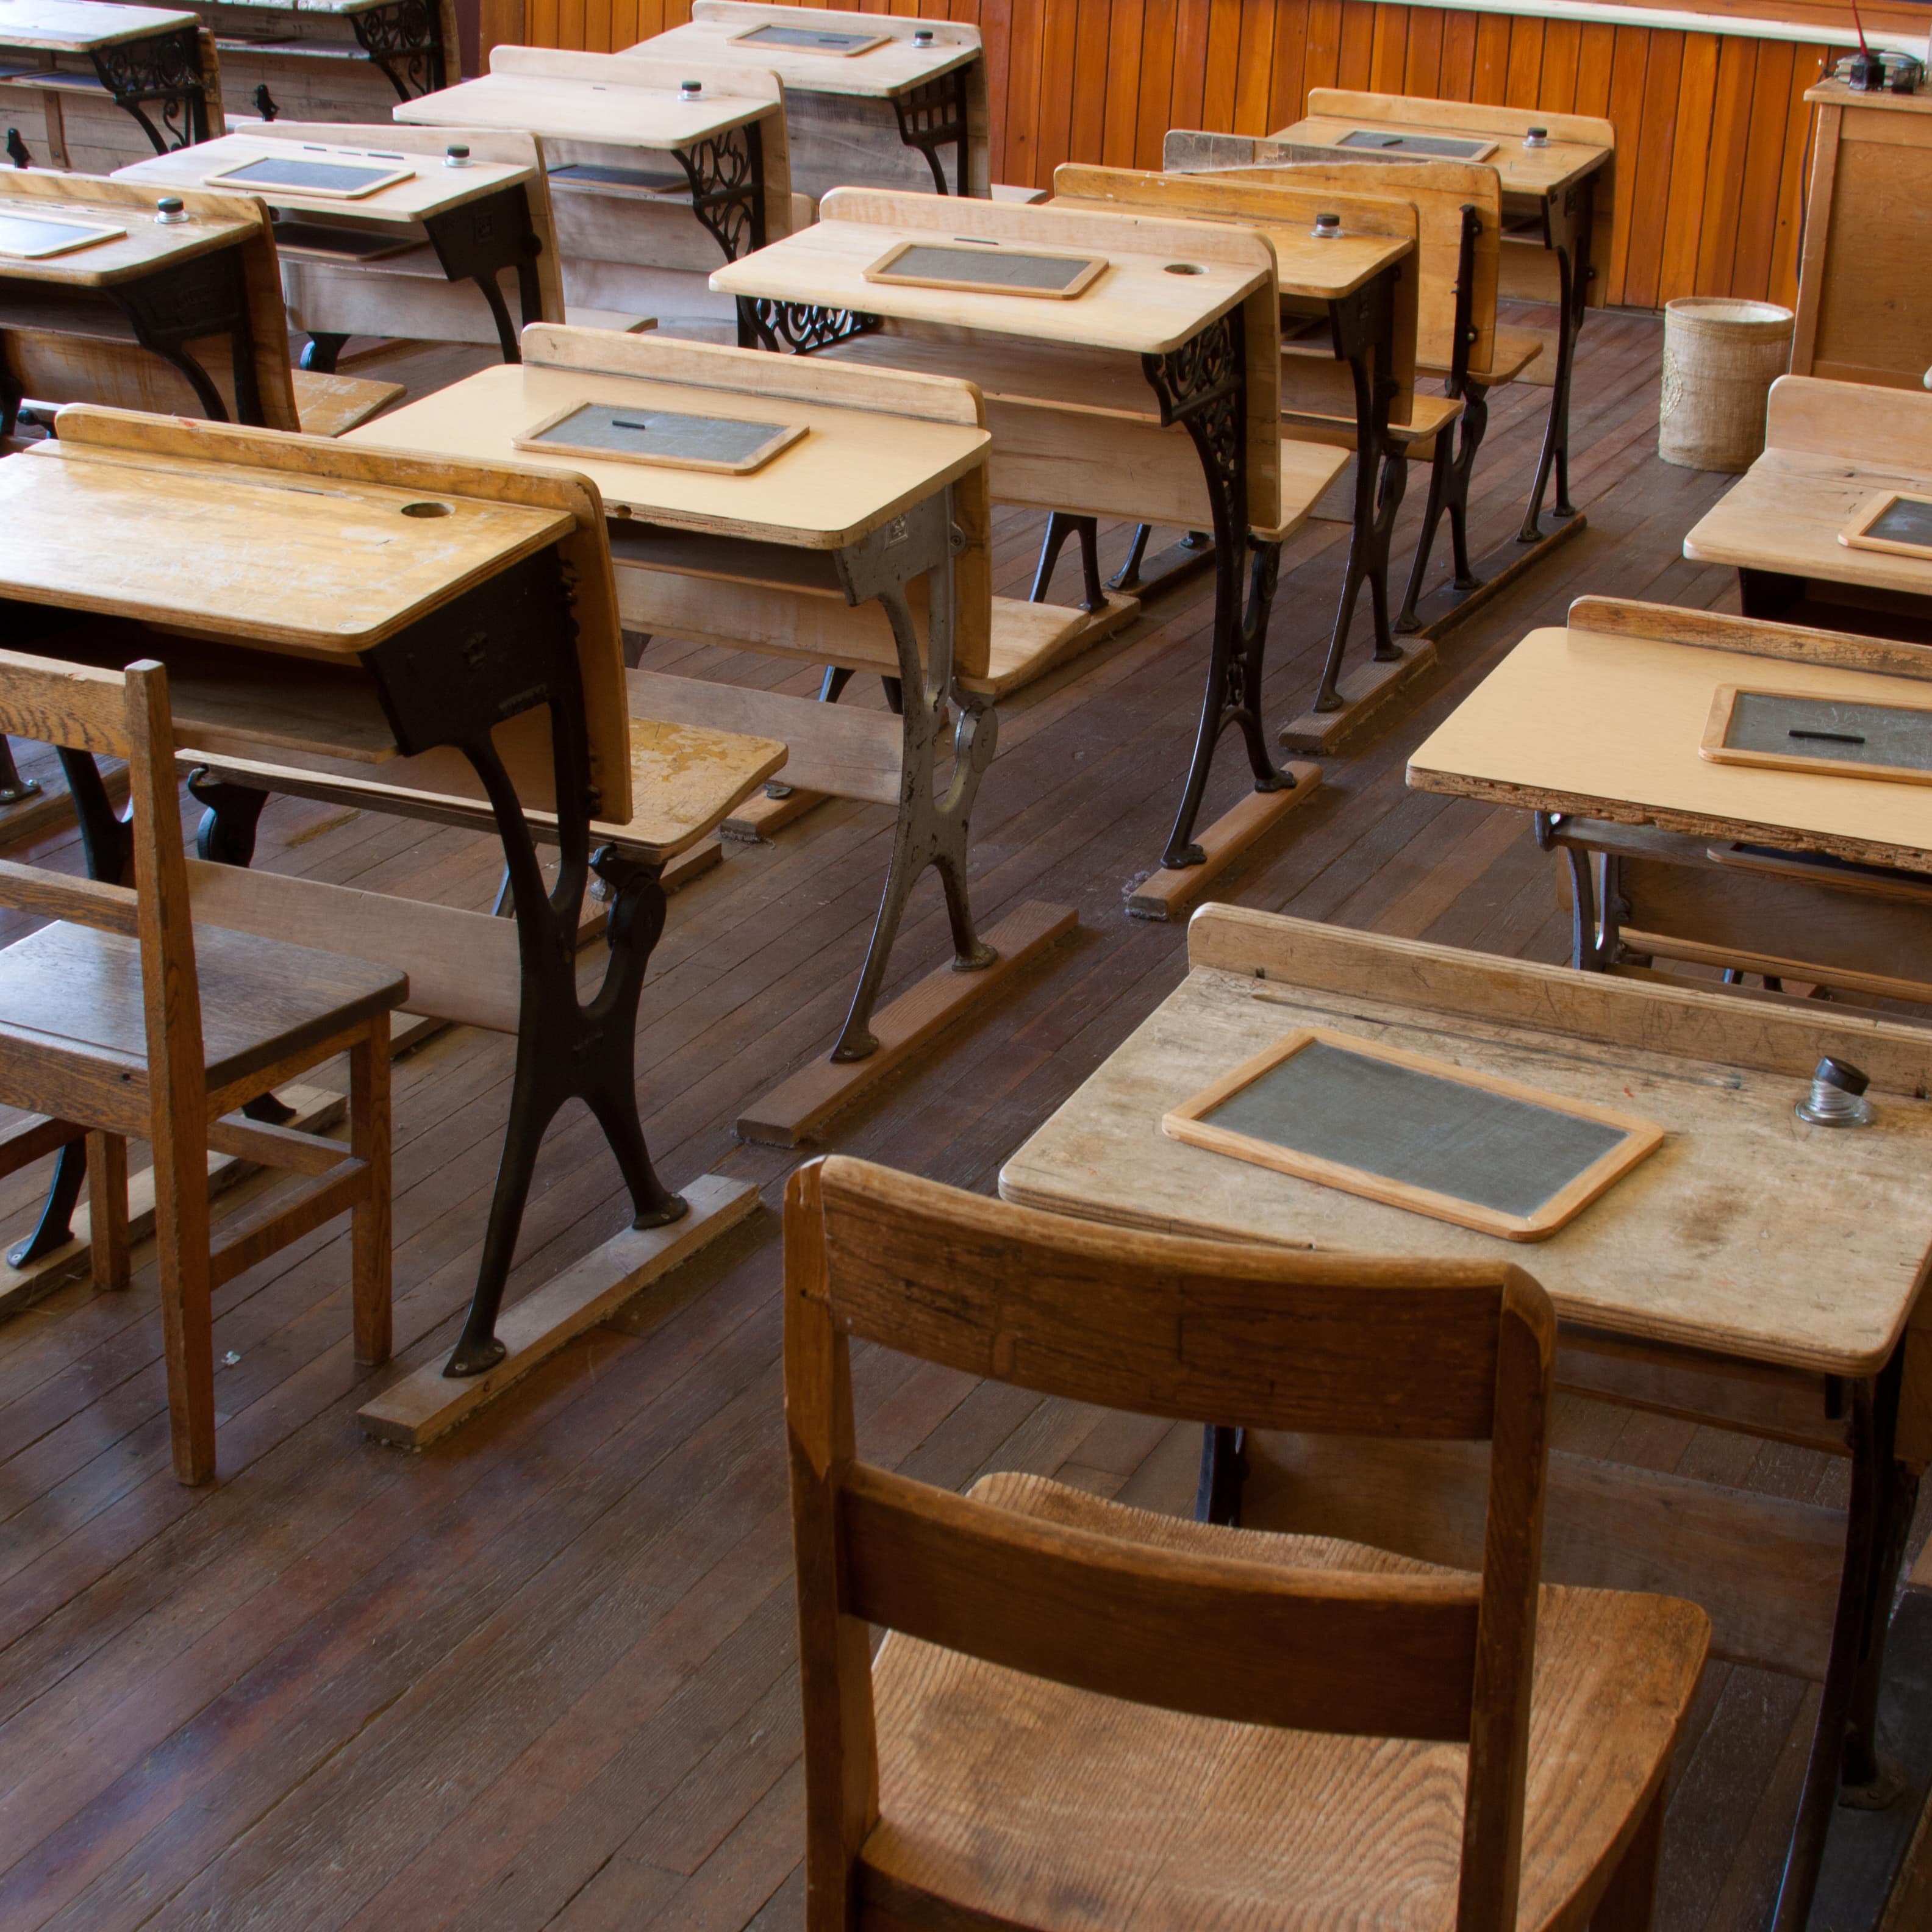 Historisches Klassenzimmer mit Holzmobiliar, auf jedem Schreibtisch eine Schiefertafel.